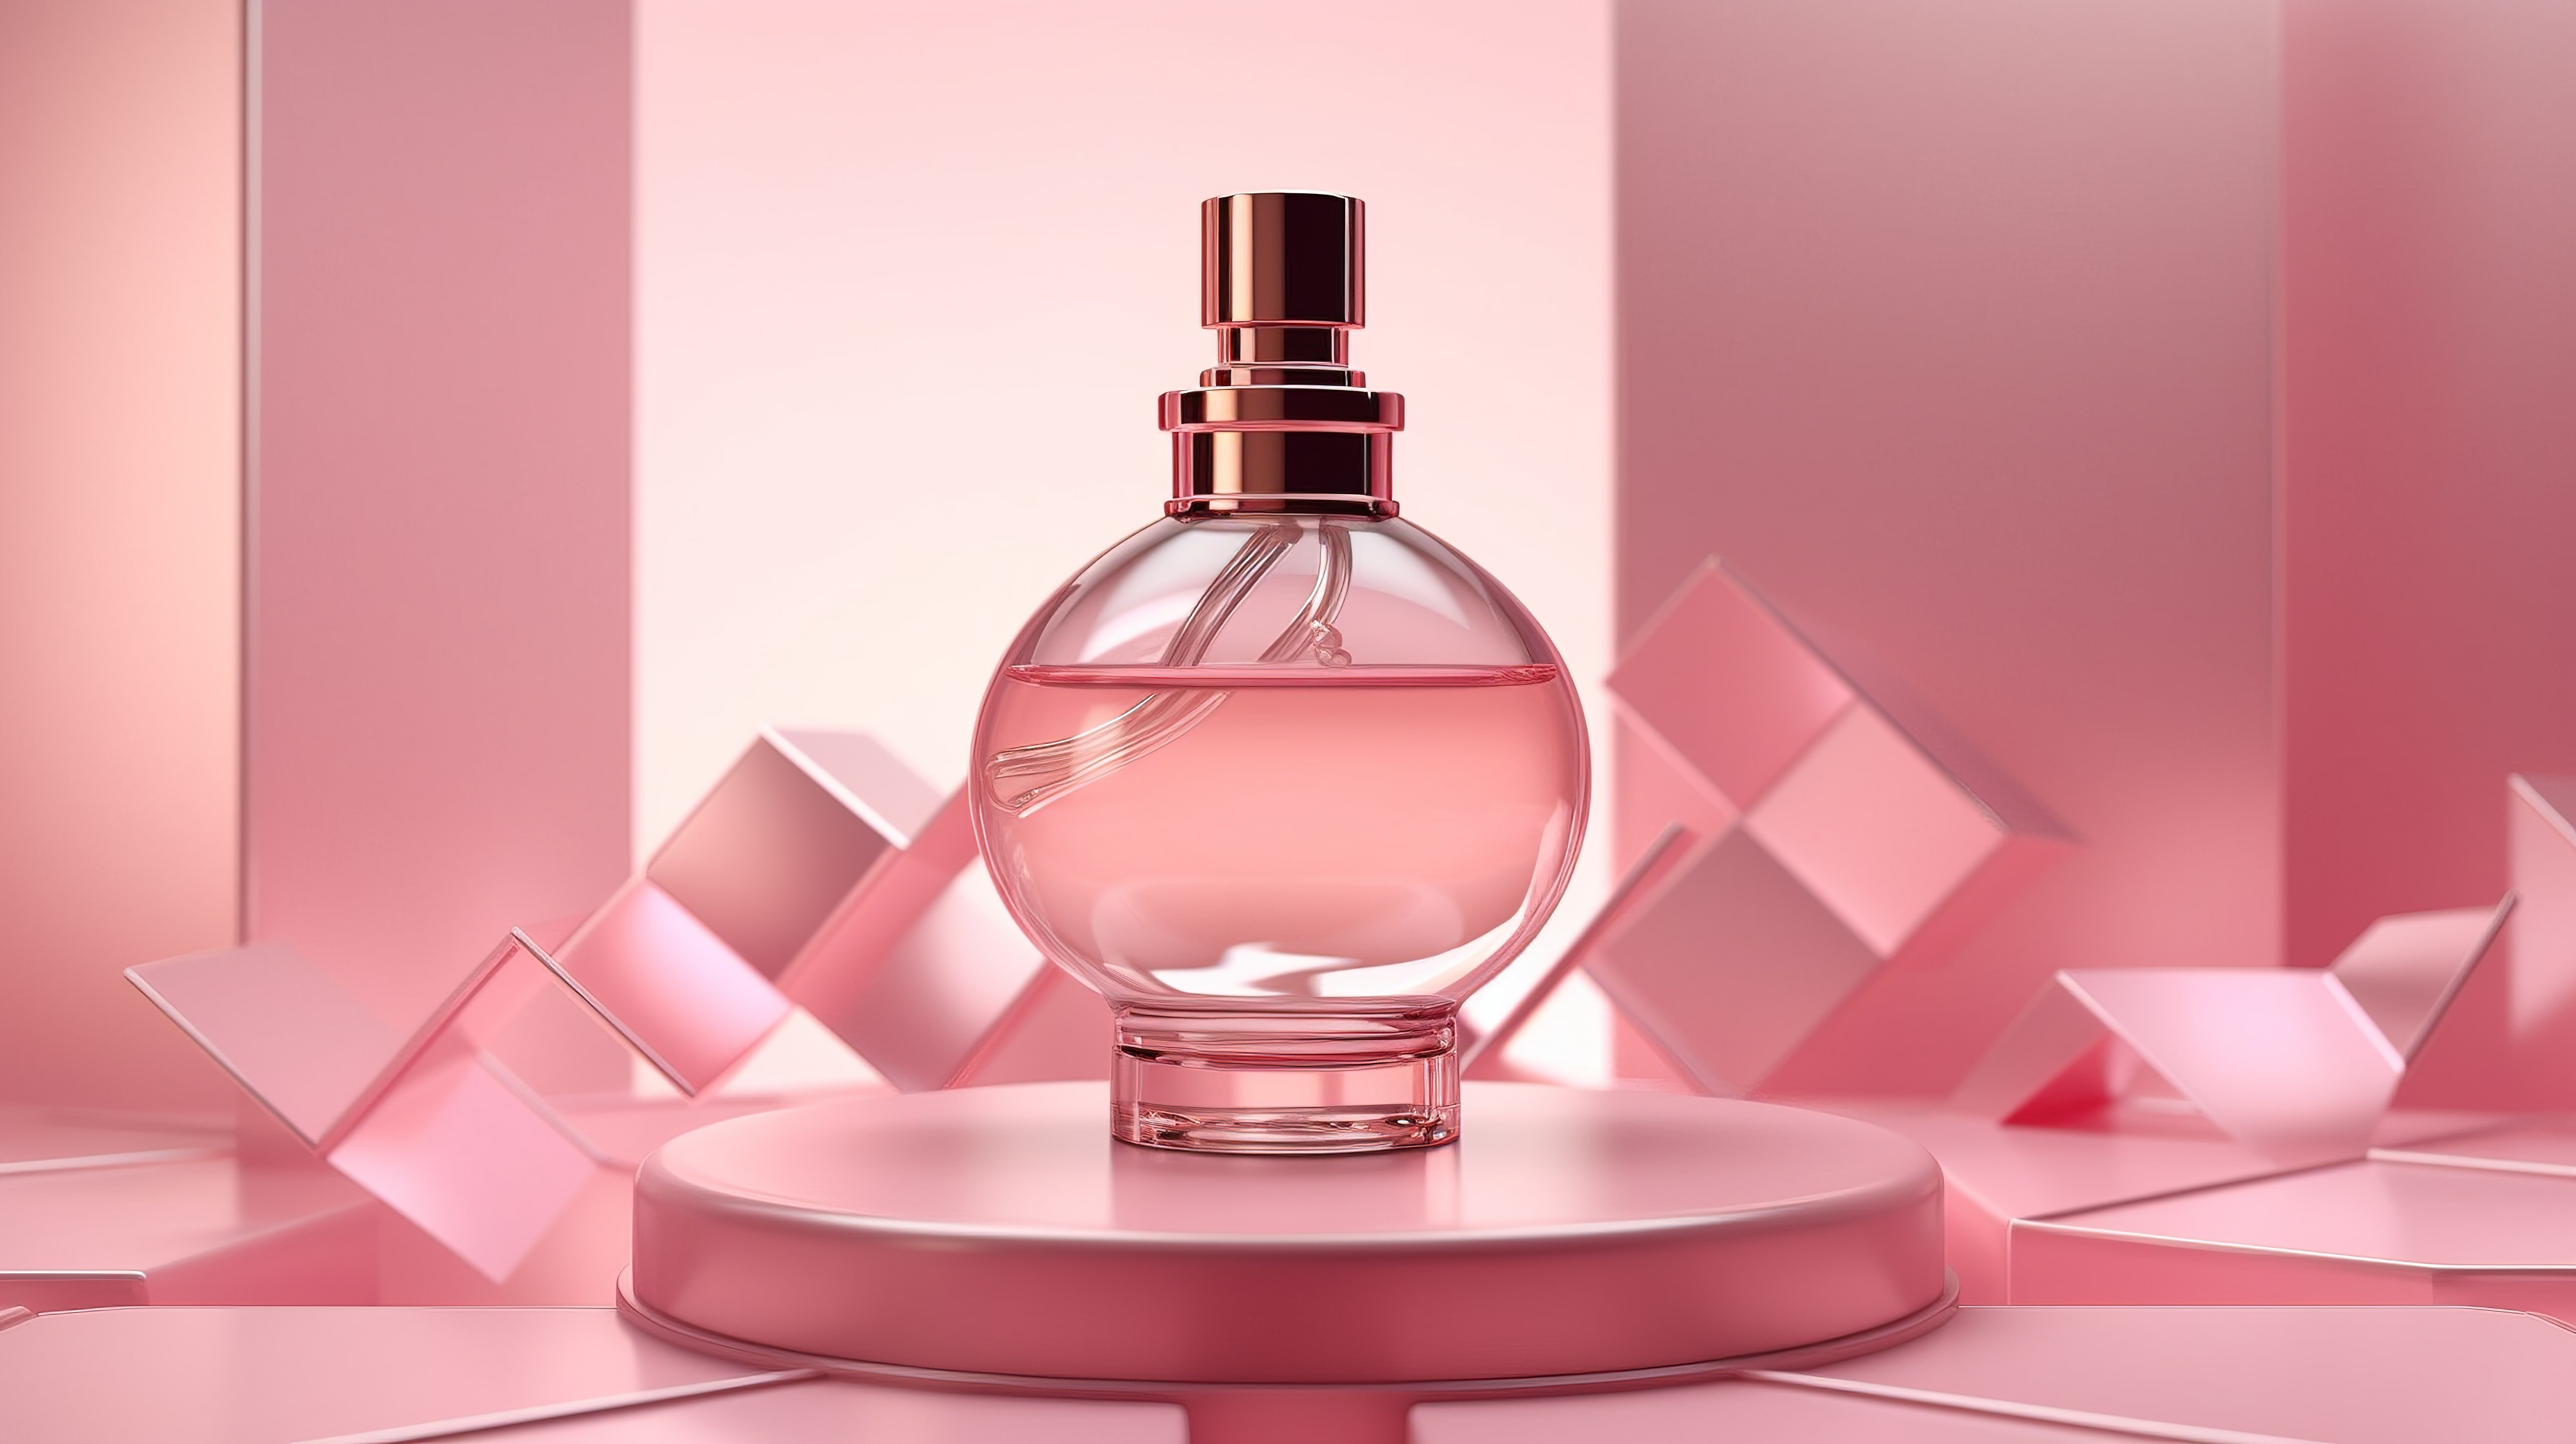 背景中带有抽象几何形状的底座上粉红色香水瓶的 3D 渲染图片